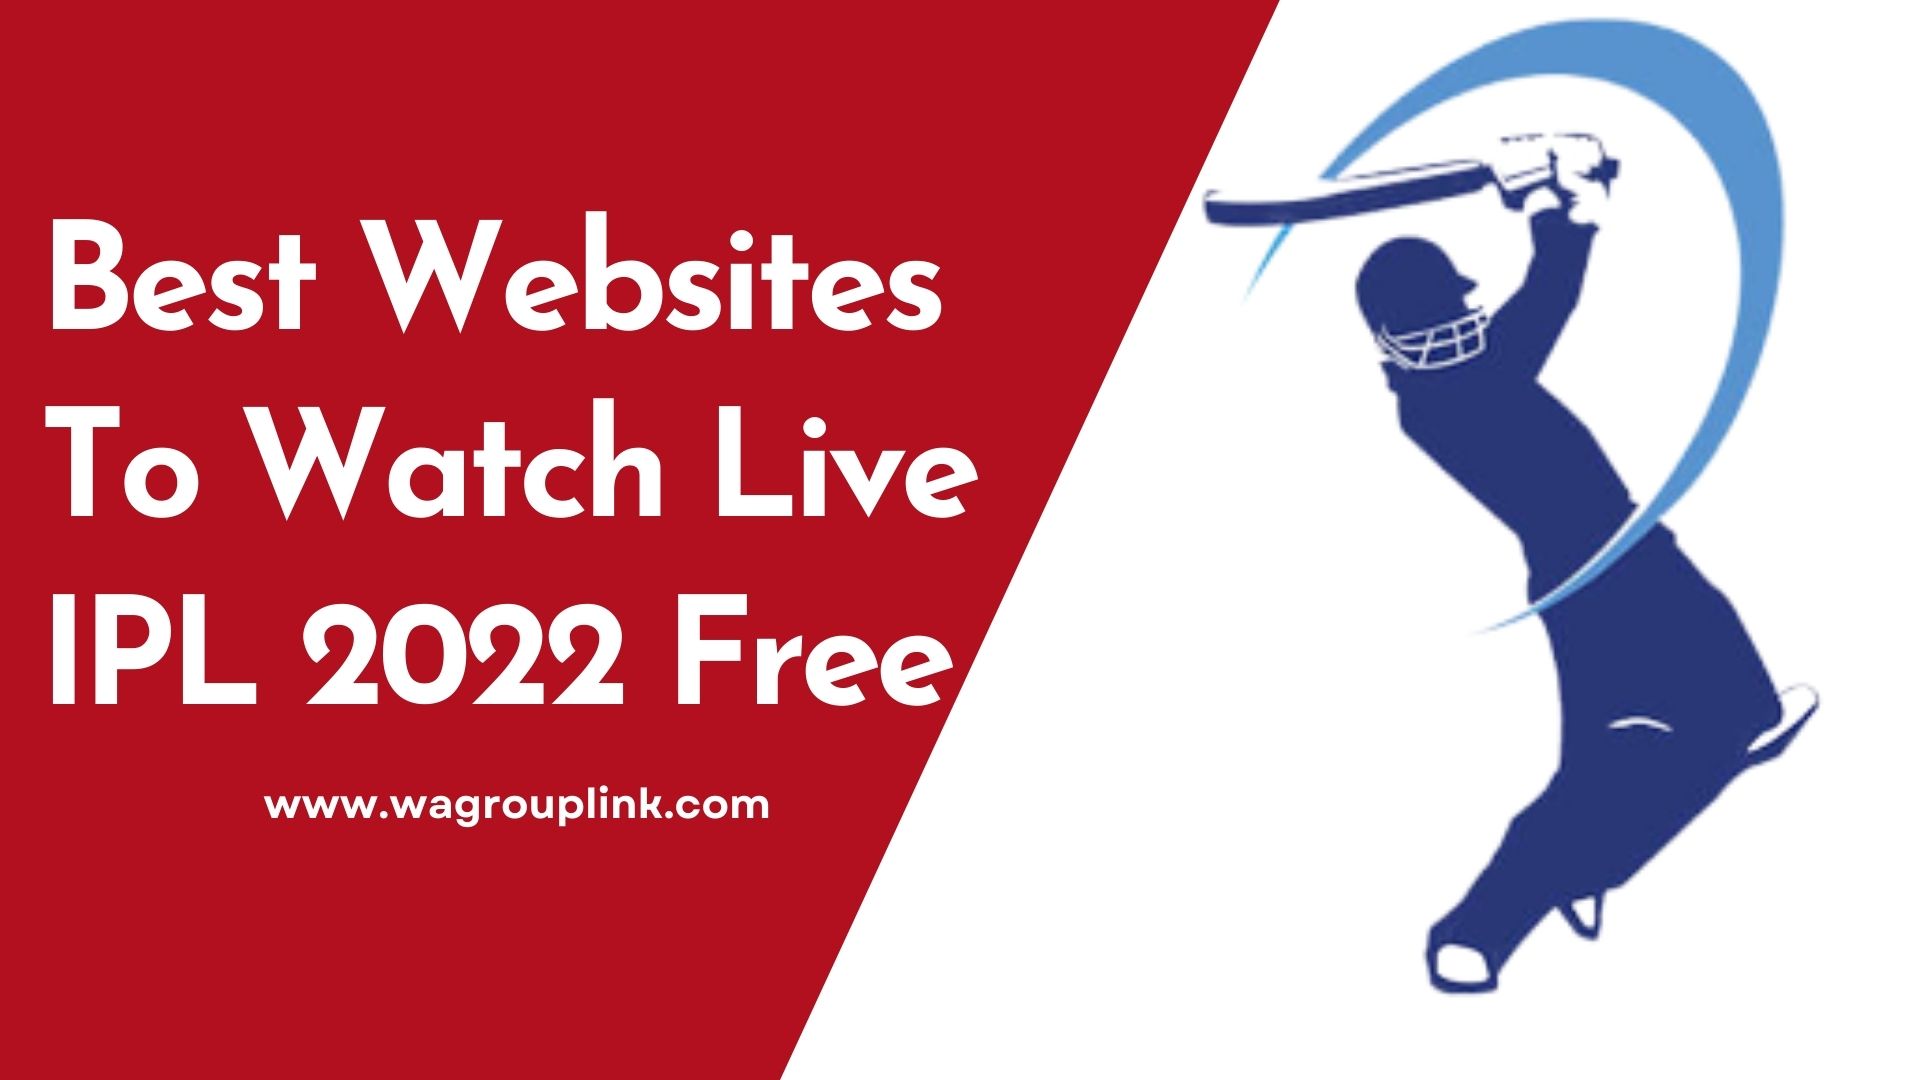 Top 10 Best Websites To Watch Live IPL 2022 Free